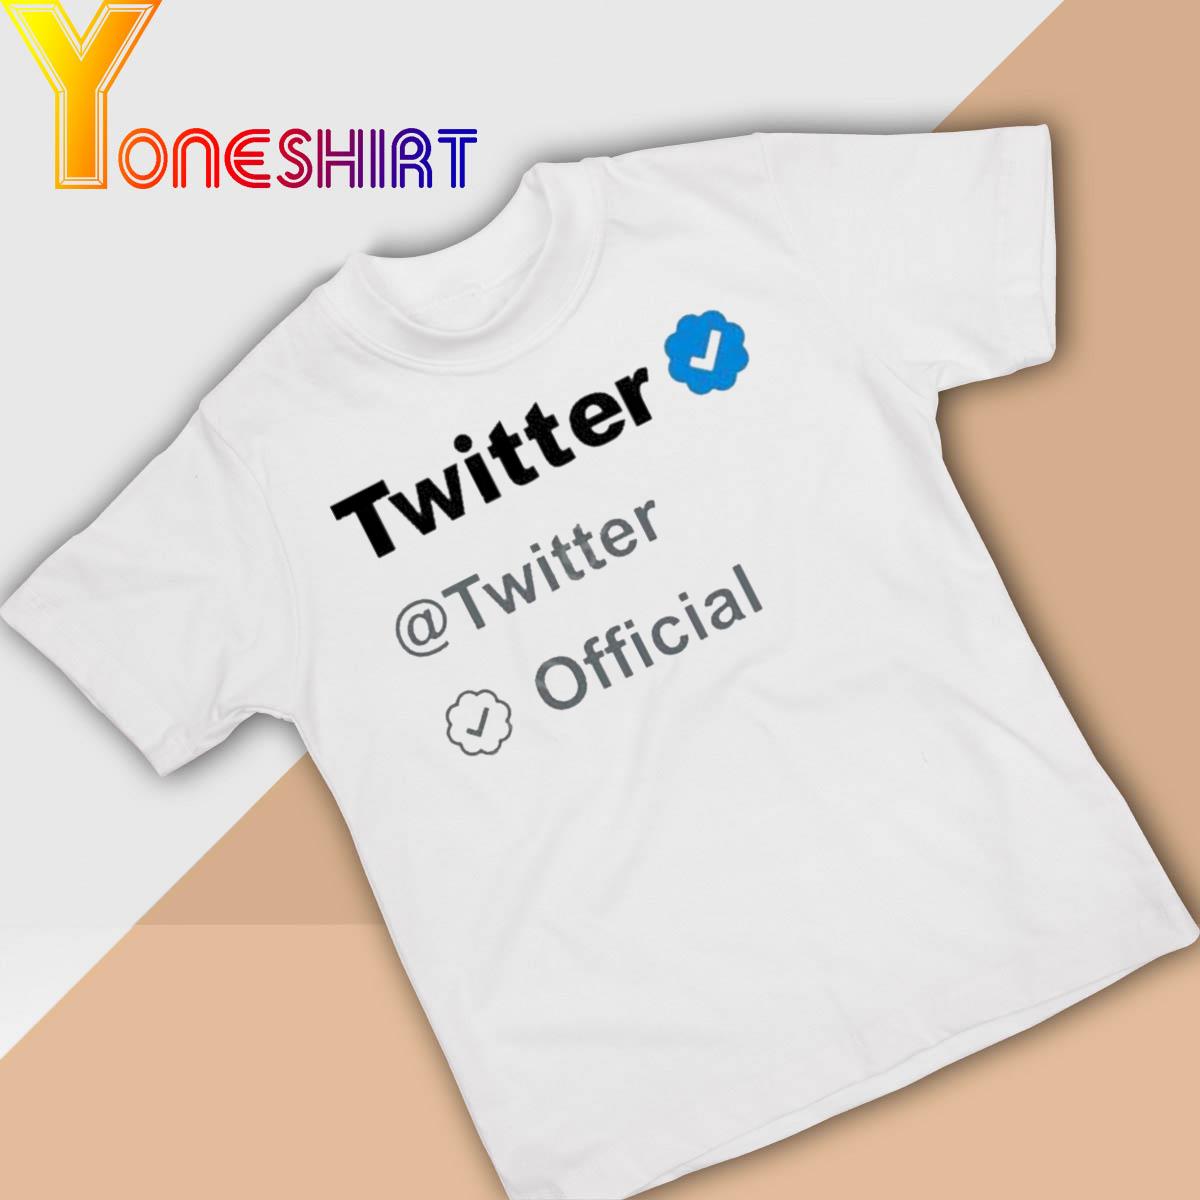 Twitter Twitter Official Shirt